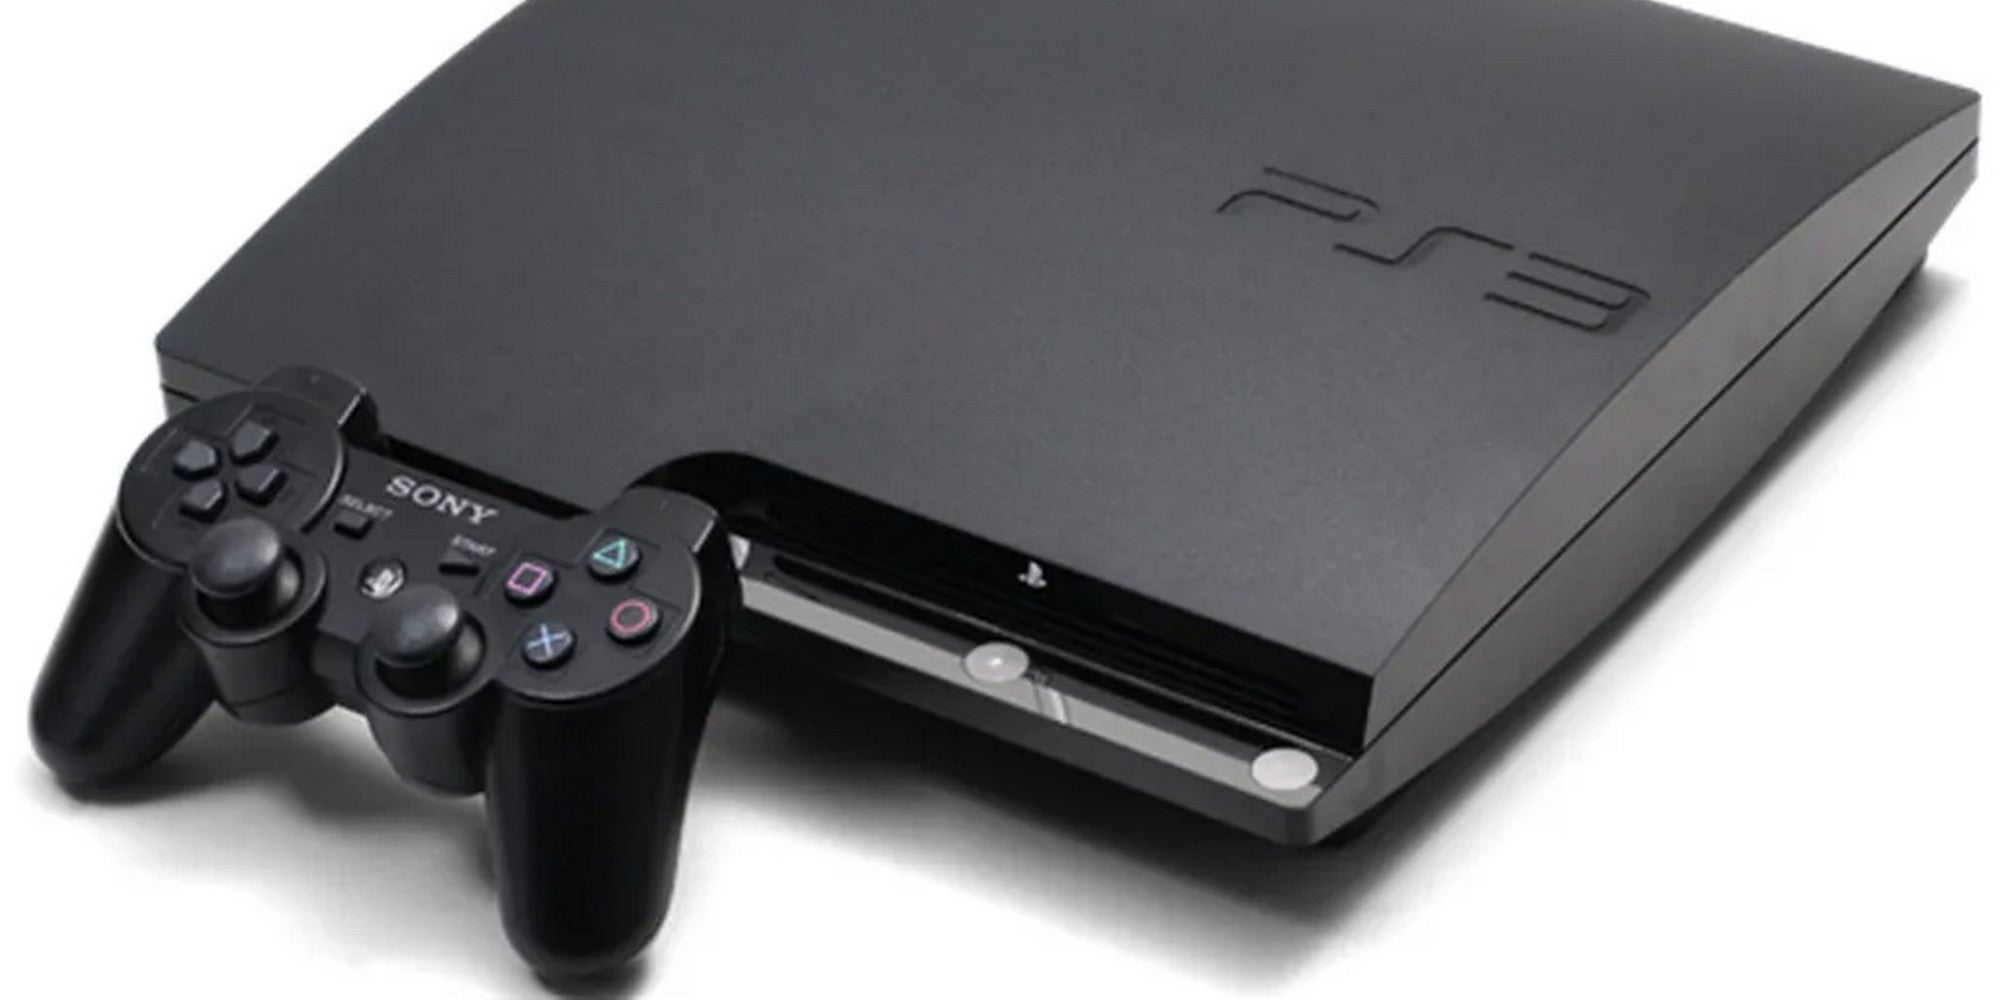 Bilder zu Bericht: PlayStation könnte an richtiger PS3-Emulation für die PS5 arbeiten